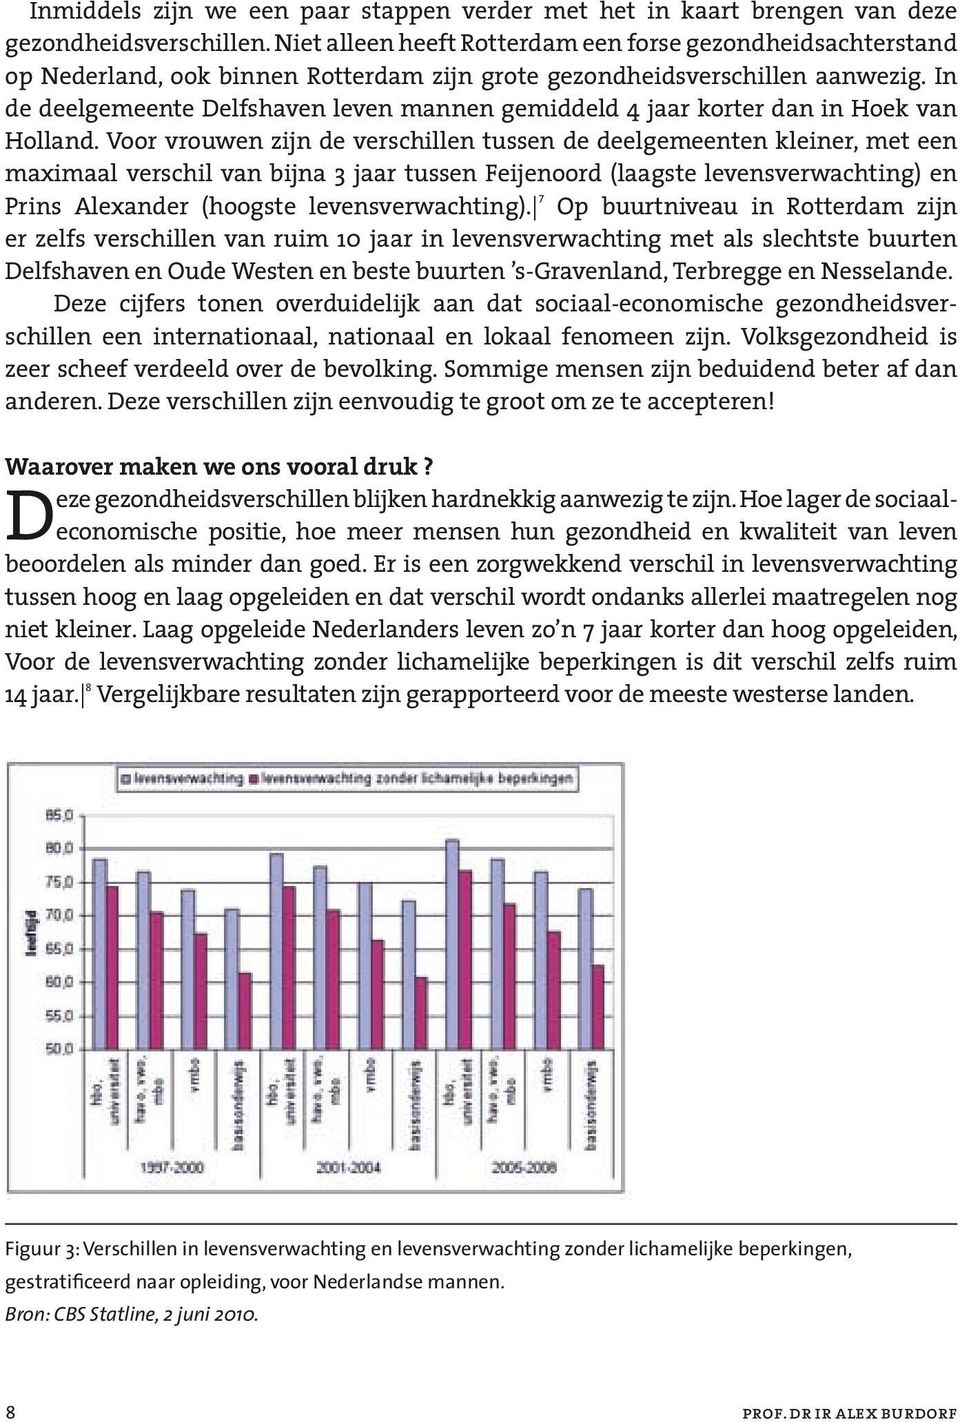 In de deelgemeente Delfshaven leven mannen gemiddeld 4 jaar korter dan in Hoek van Holland.